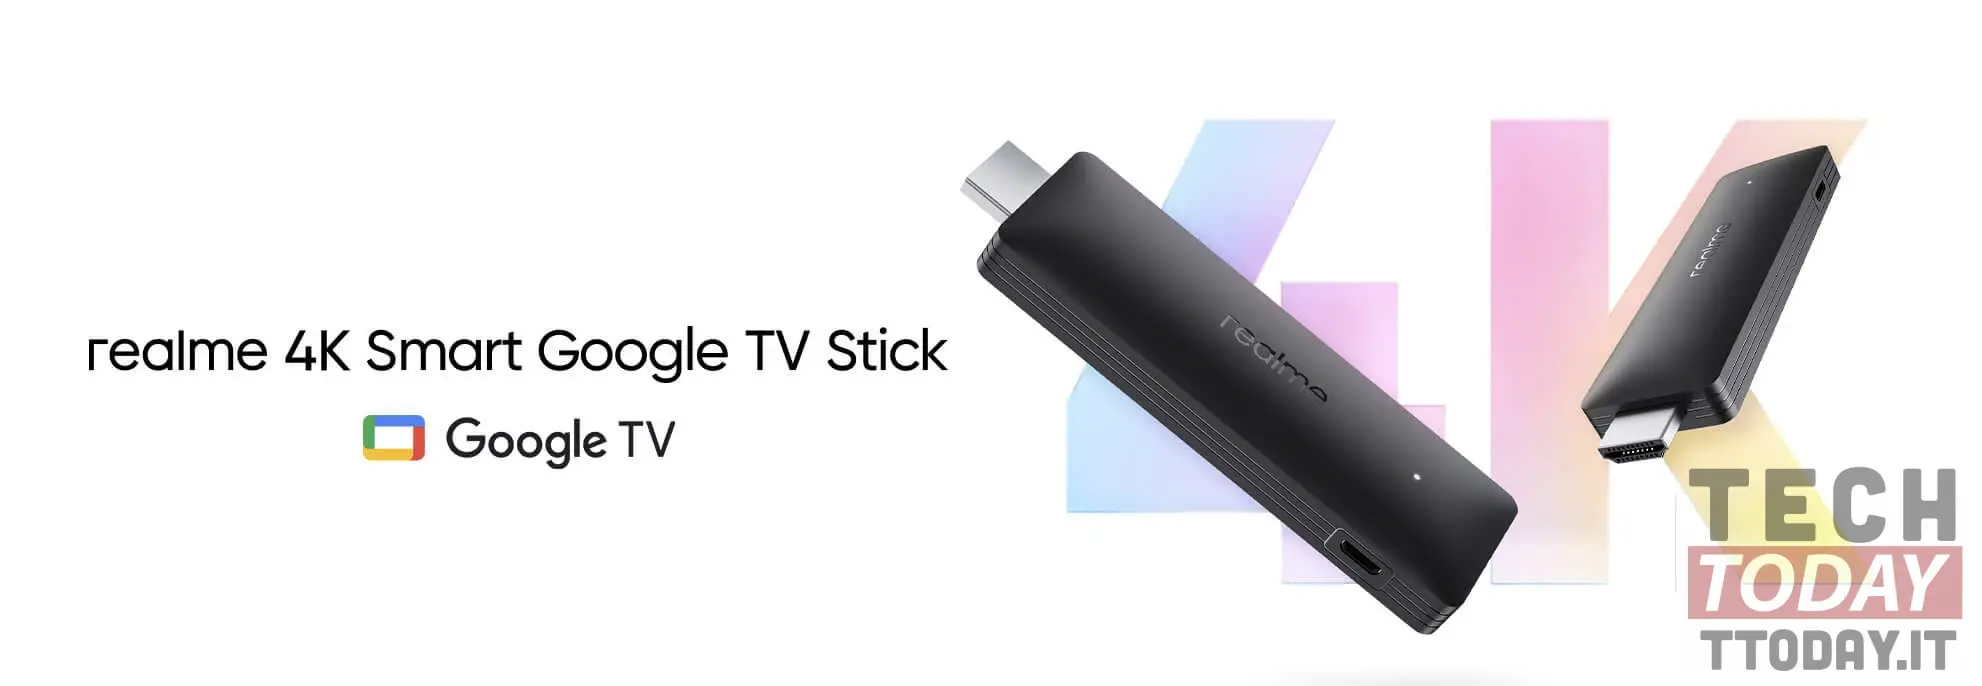 realme tv stick 4k תהיה האלטרנטיבה ל- google chromecast